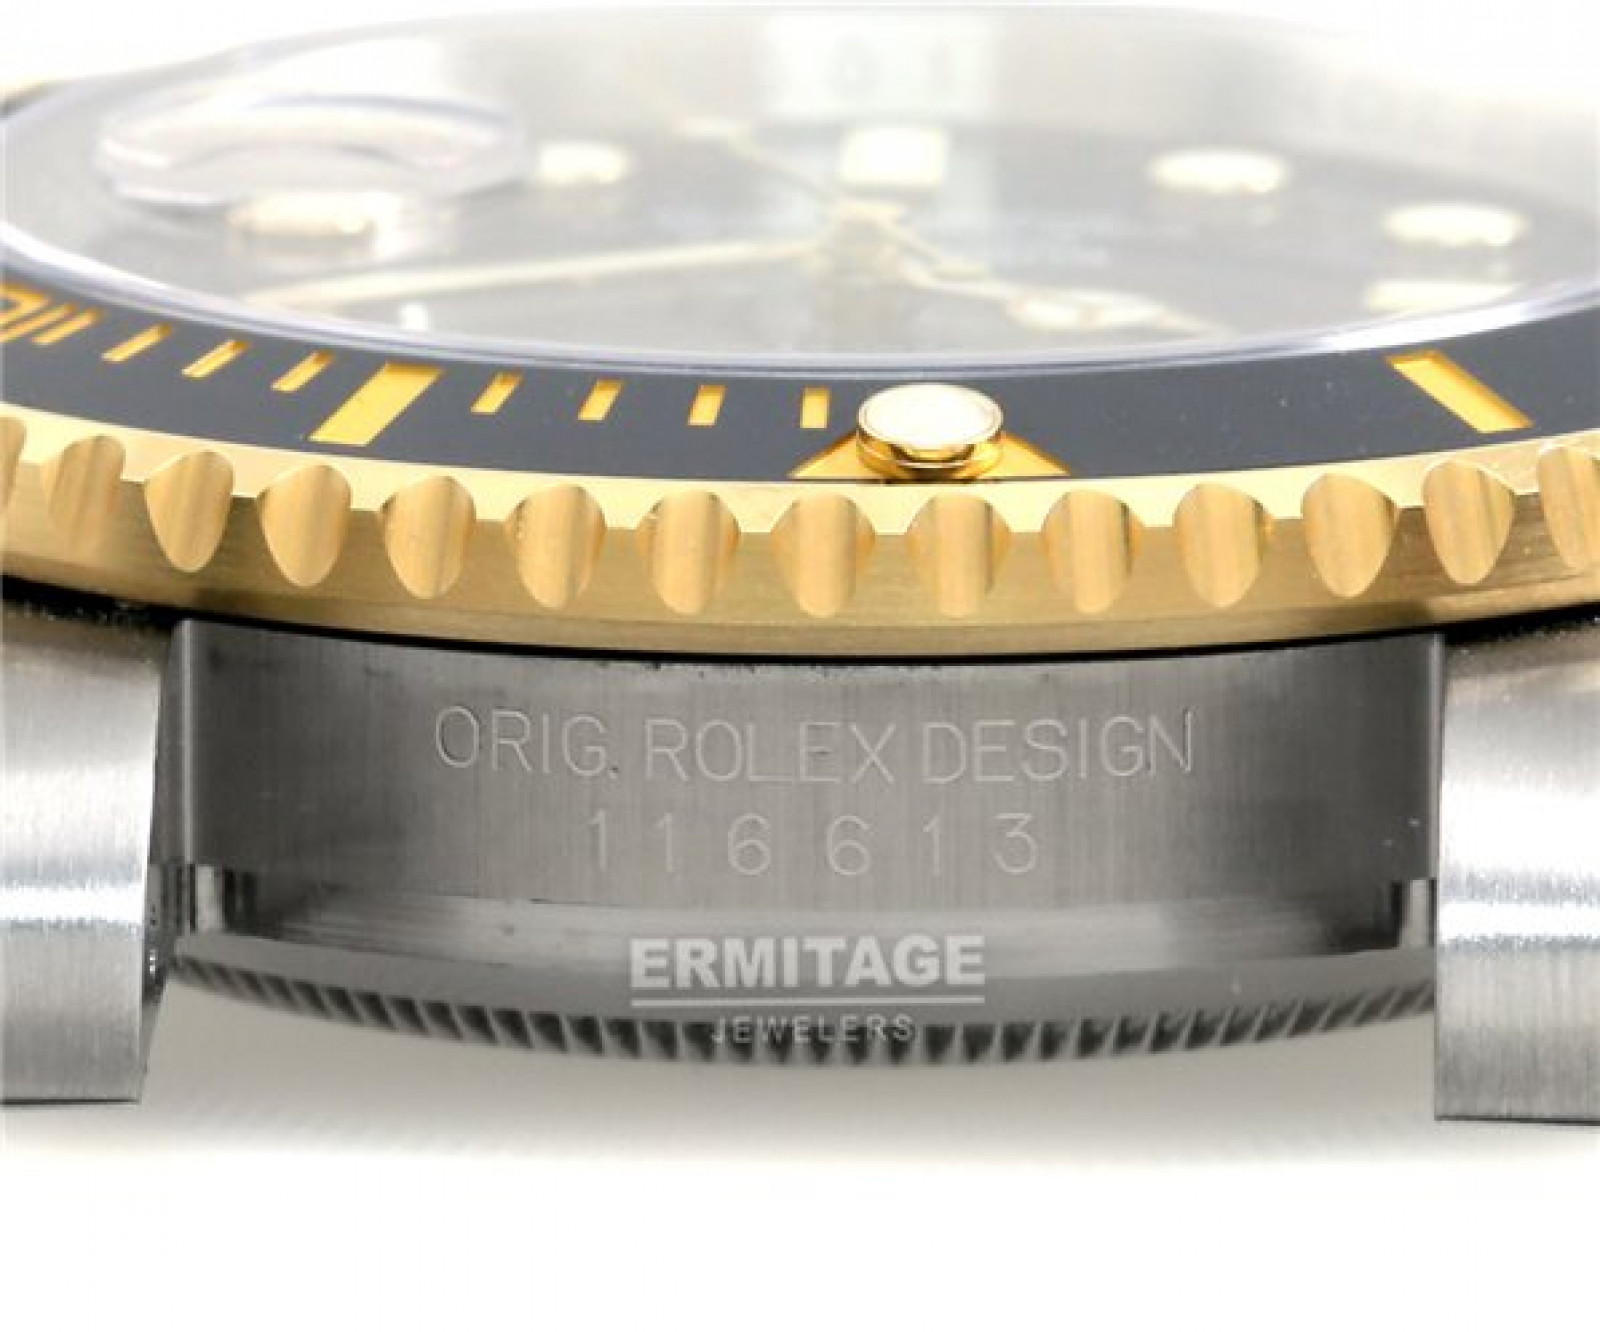 2015 Rolex Submariner 116613 Gold & Steel Black